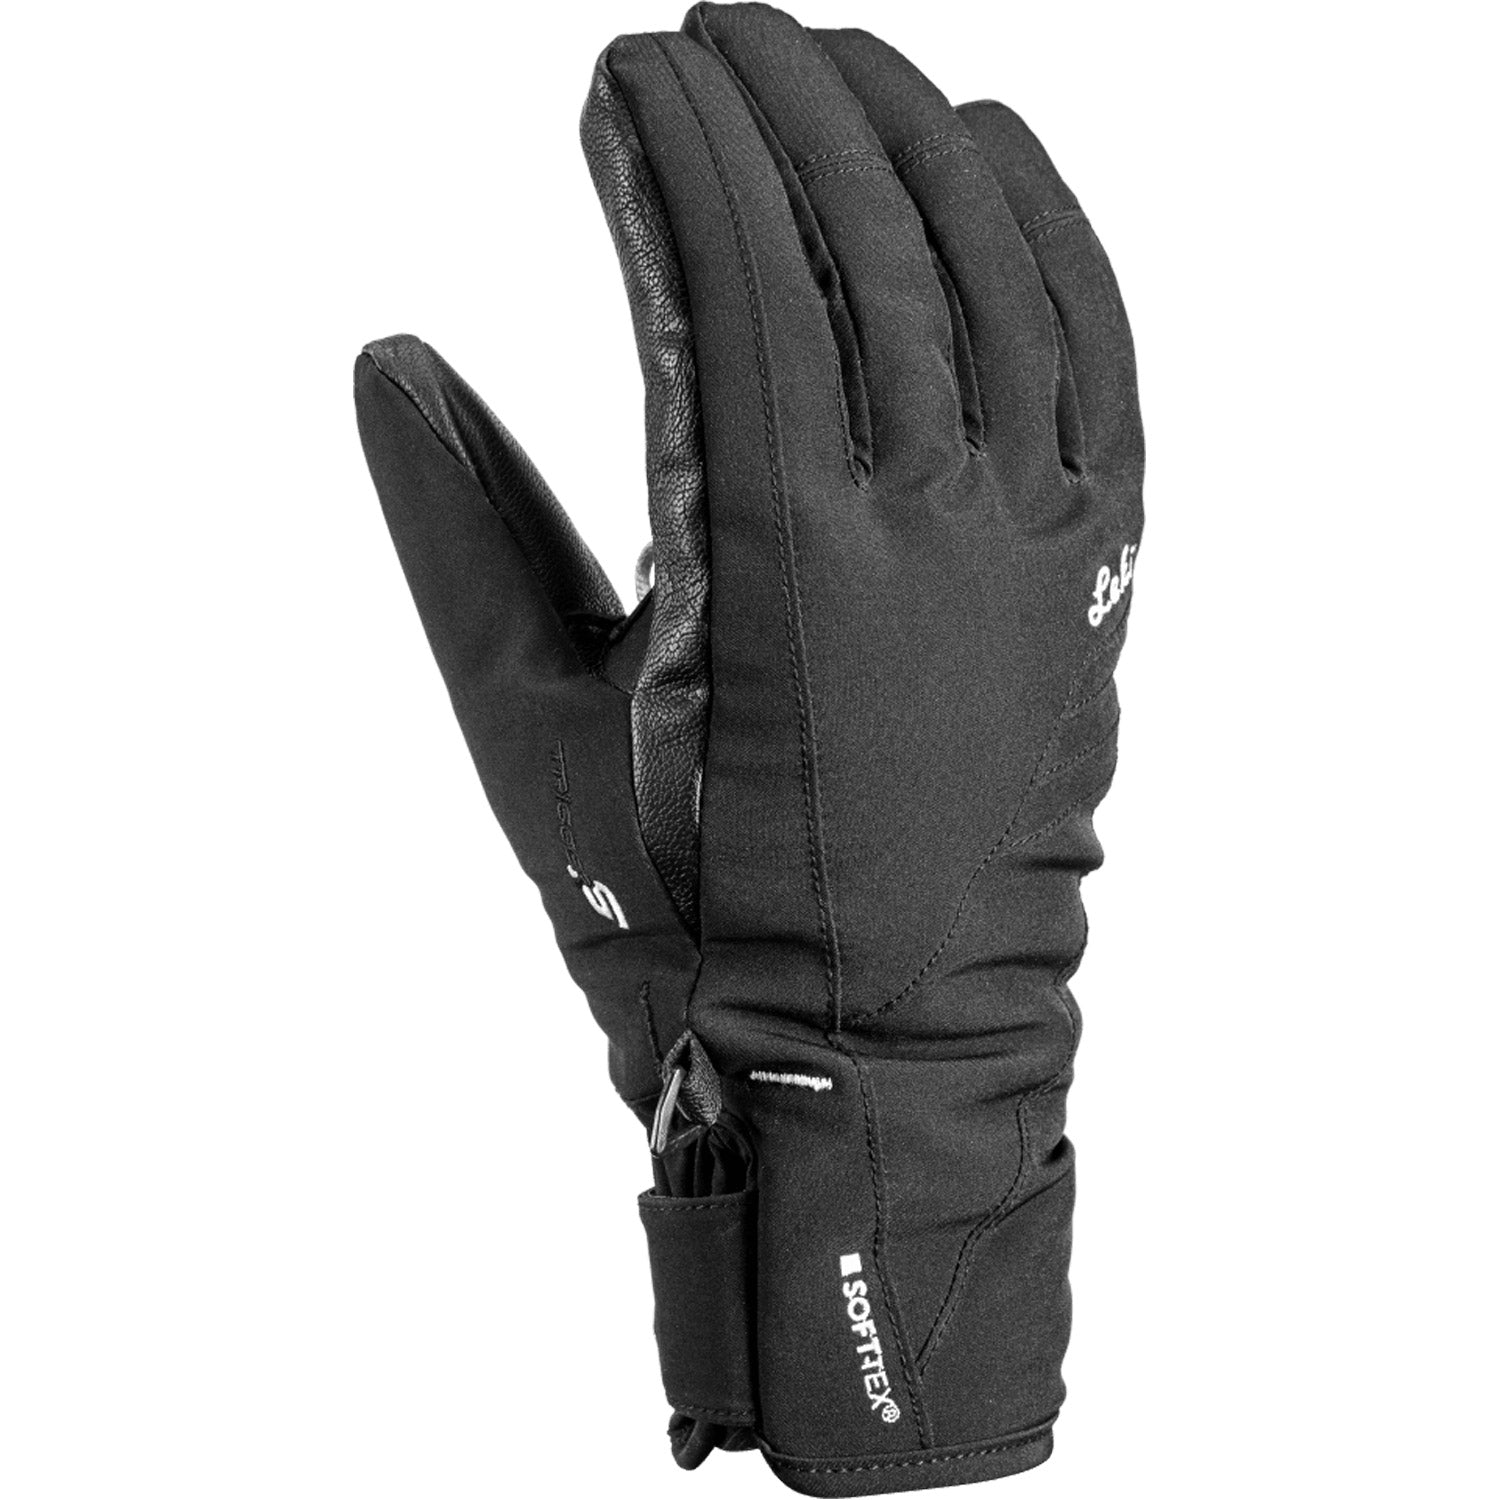 Cerro S Lady Ski Glove